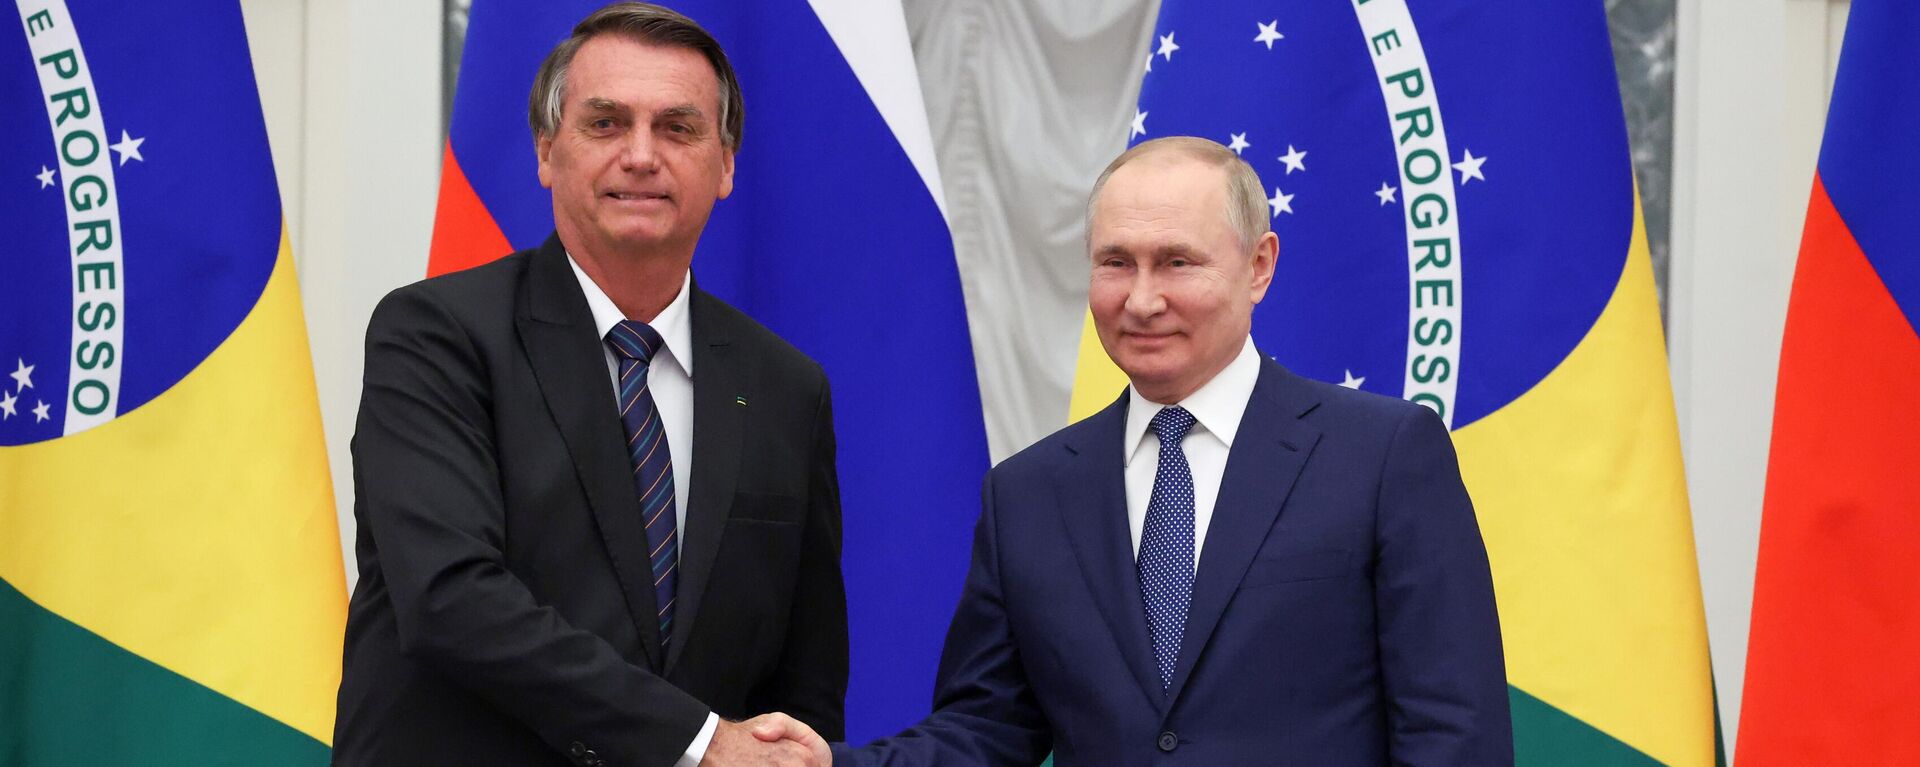 Jair Bolsonaro e Vladimir Putin, presidentes do Brasil e da Rússia, respectivamente, após encontro oficial no Kremlin, Moscou, Rússia, 16 de fevereiro de 2022 - Sputnik Brasil, 1920, 16.03.2022